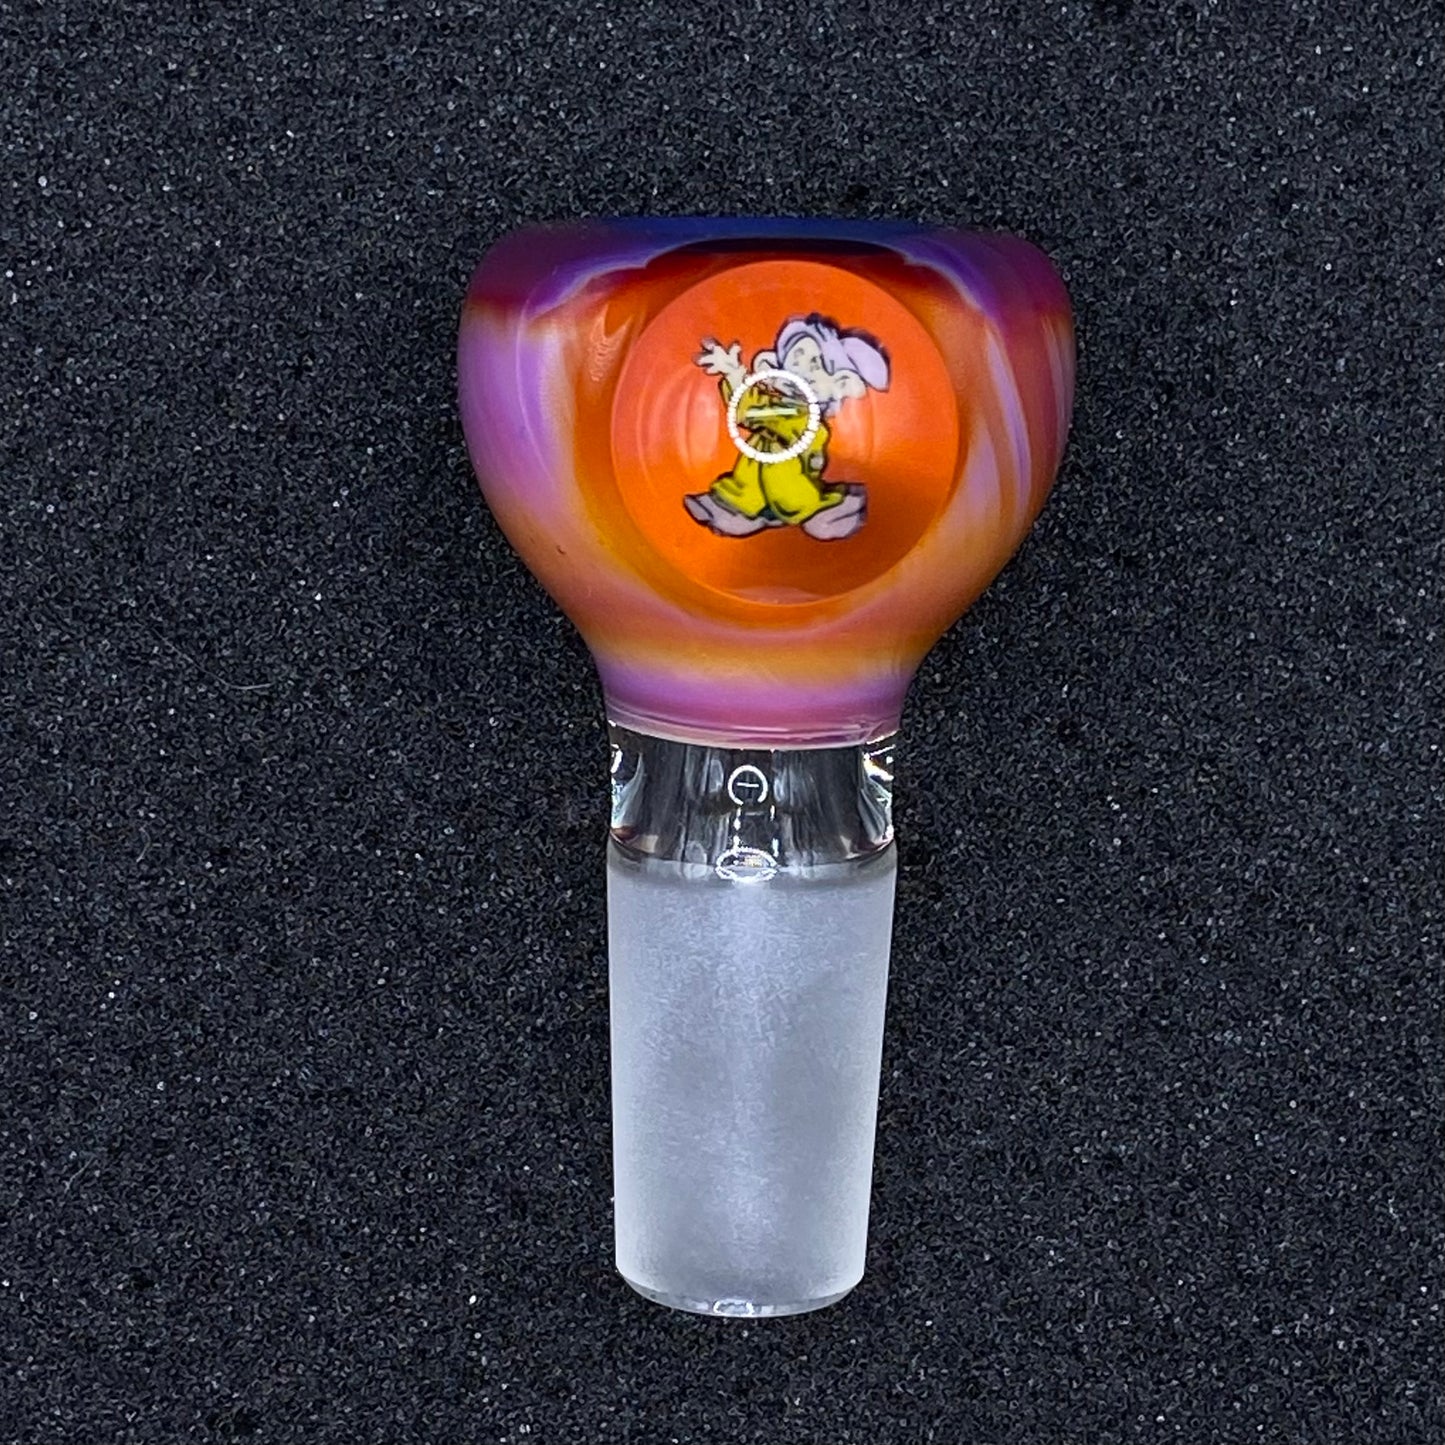 Keys Glass - 14mm Single Hole Glass Bowl Slide